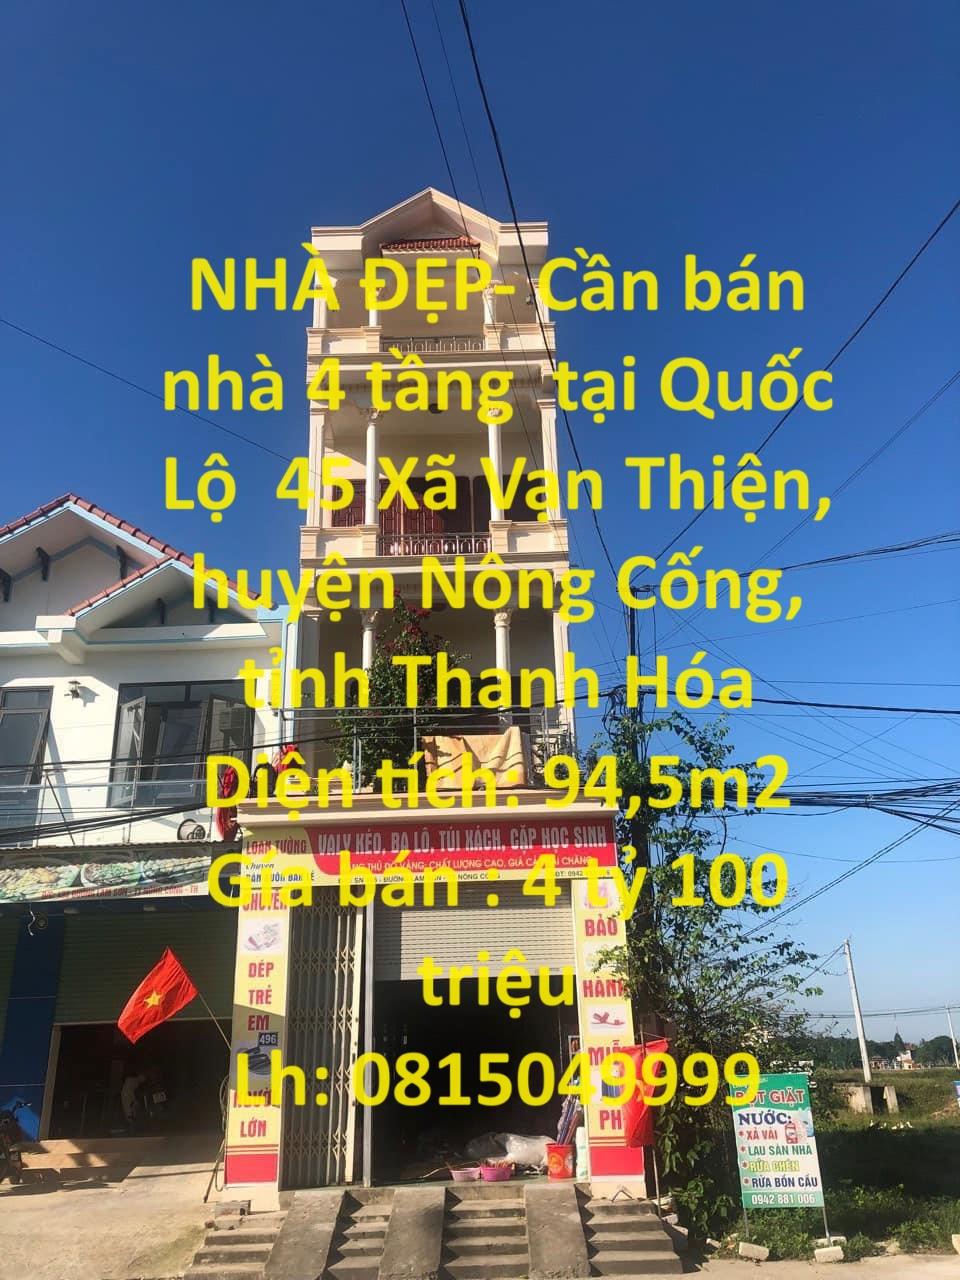 NHÀ ĐẸP- Cần bán nhà 4 tầng  tại Quốc Lộ  45 Xã Vạn Thiện, huyện Nông Cống, tỉnh Thanh Hóa1399669